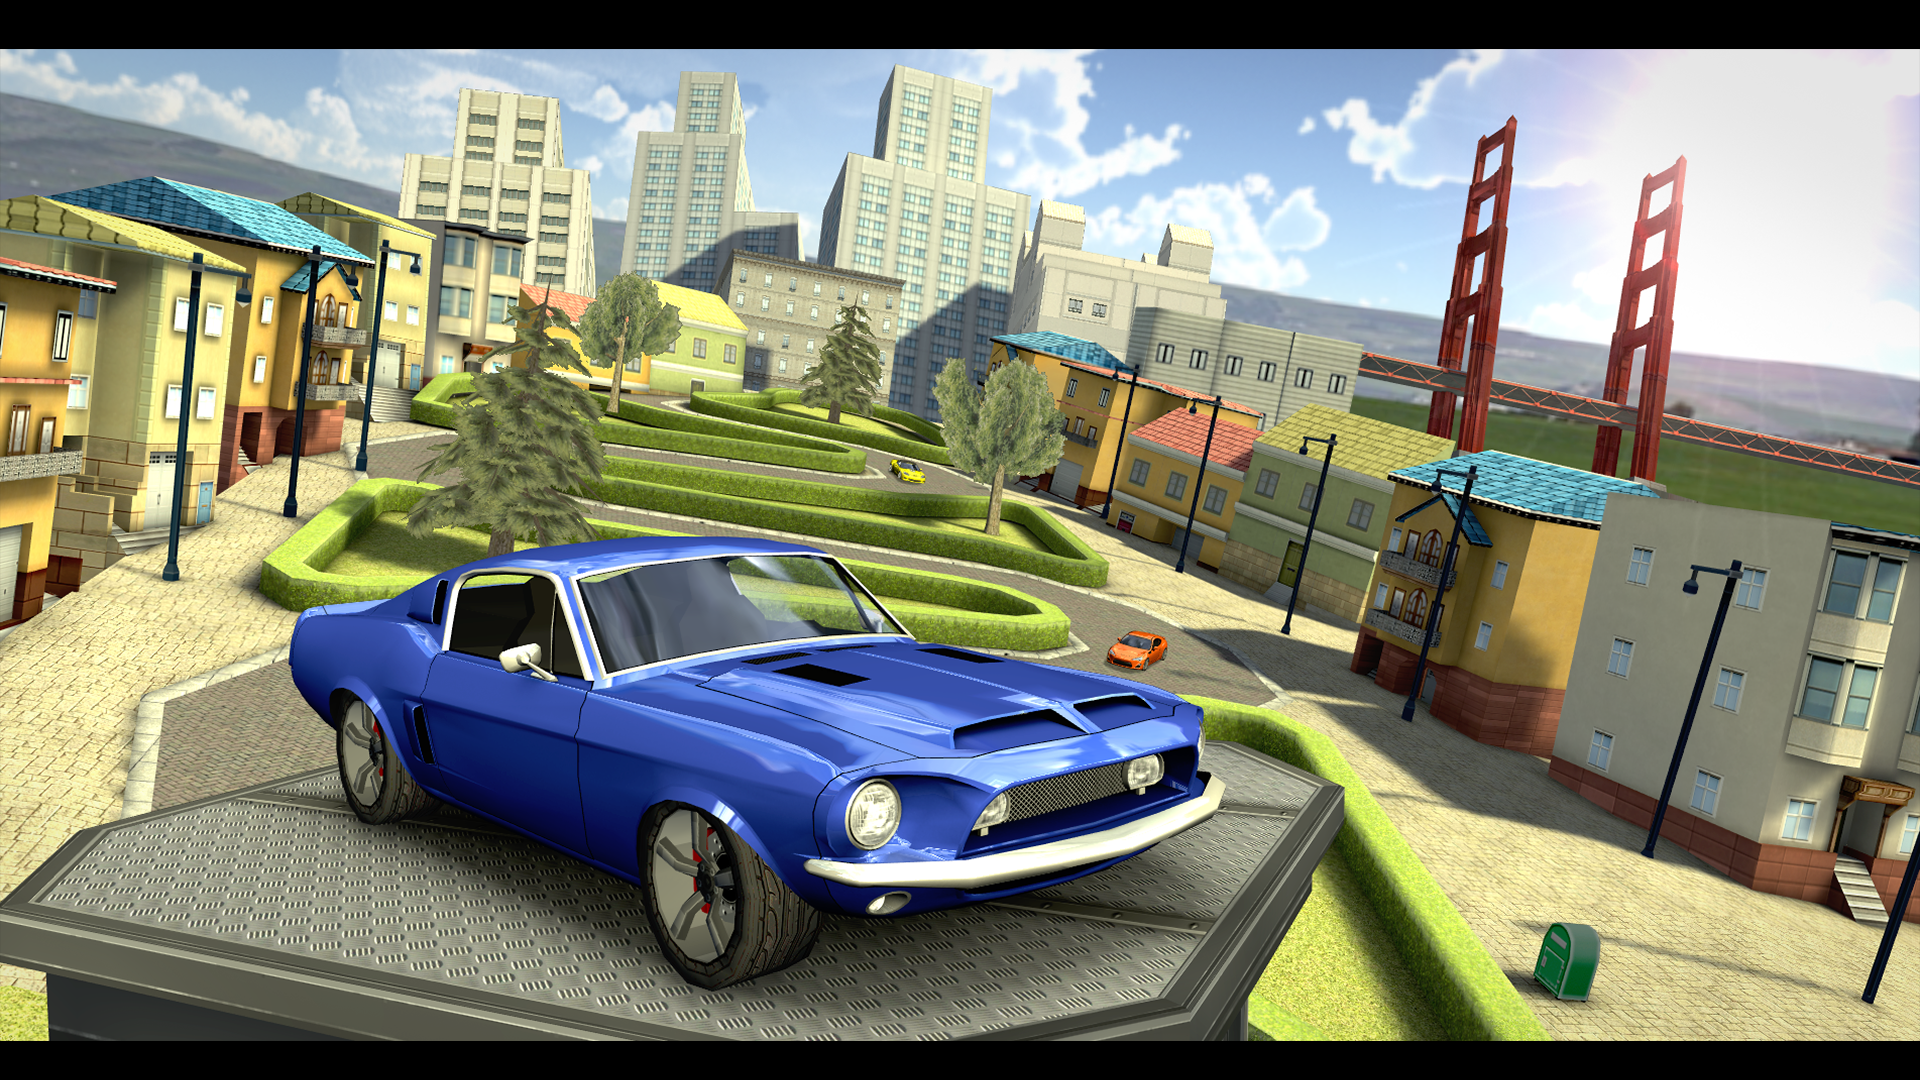 Screenshot 1 of Car Driving Simulator: SF 5.0.0